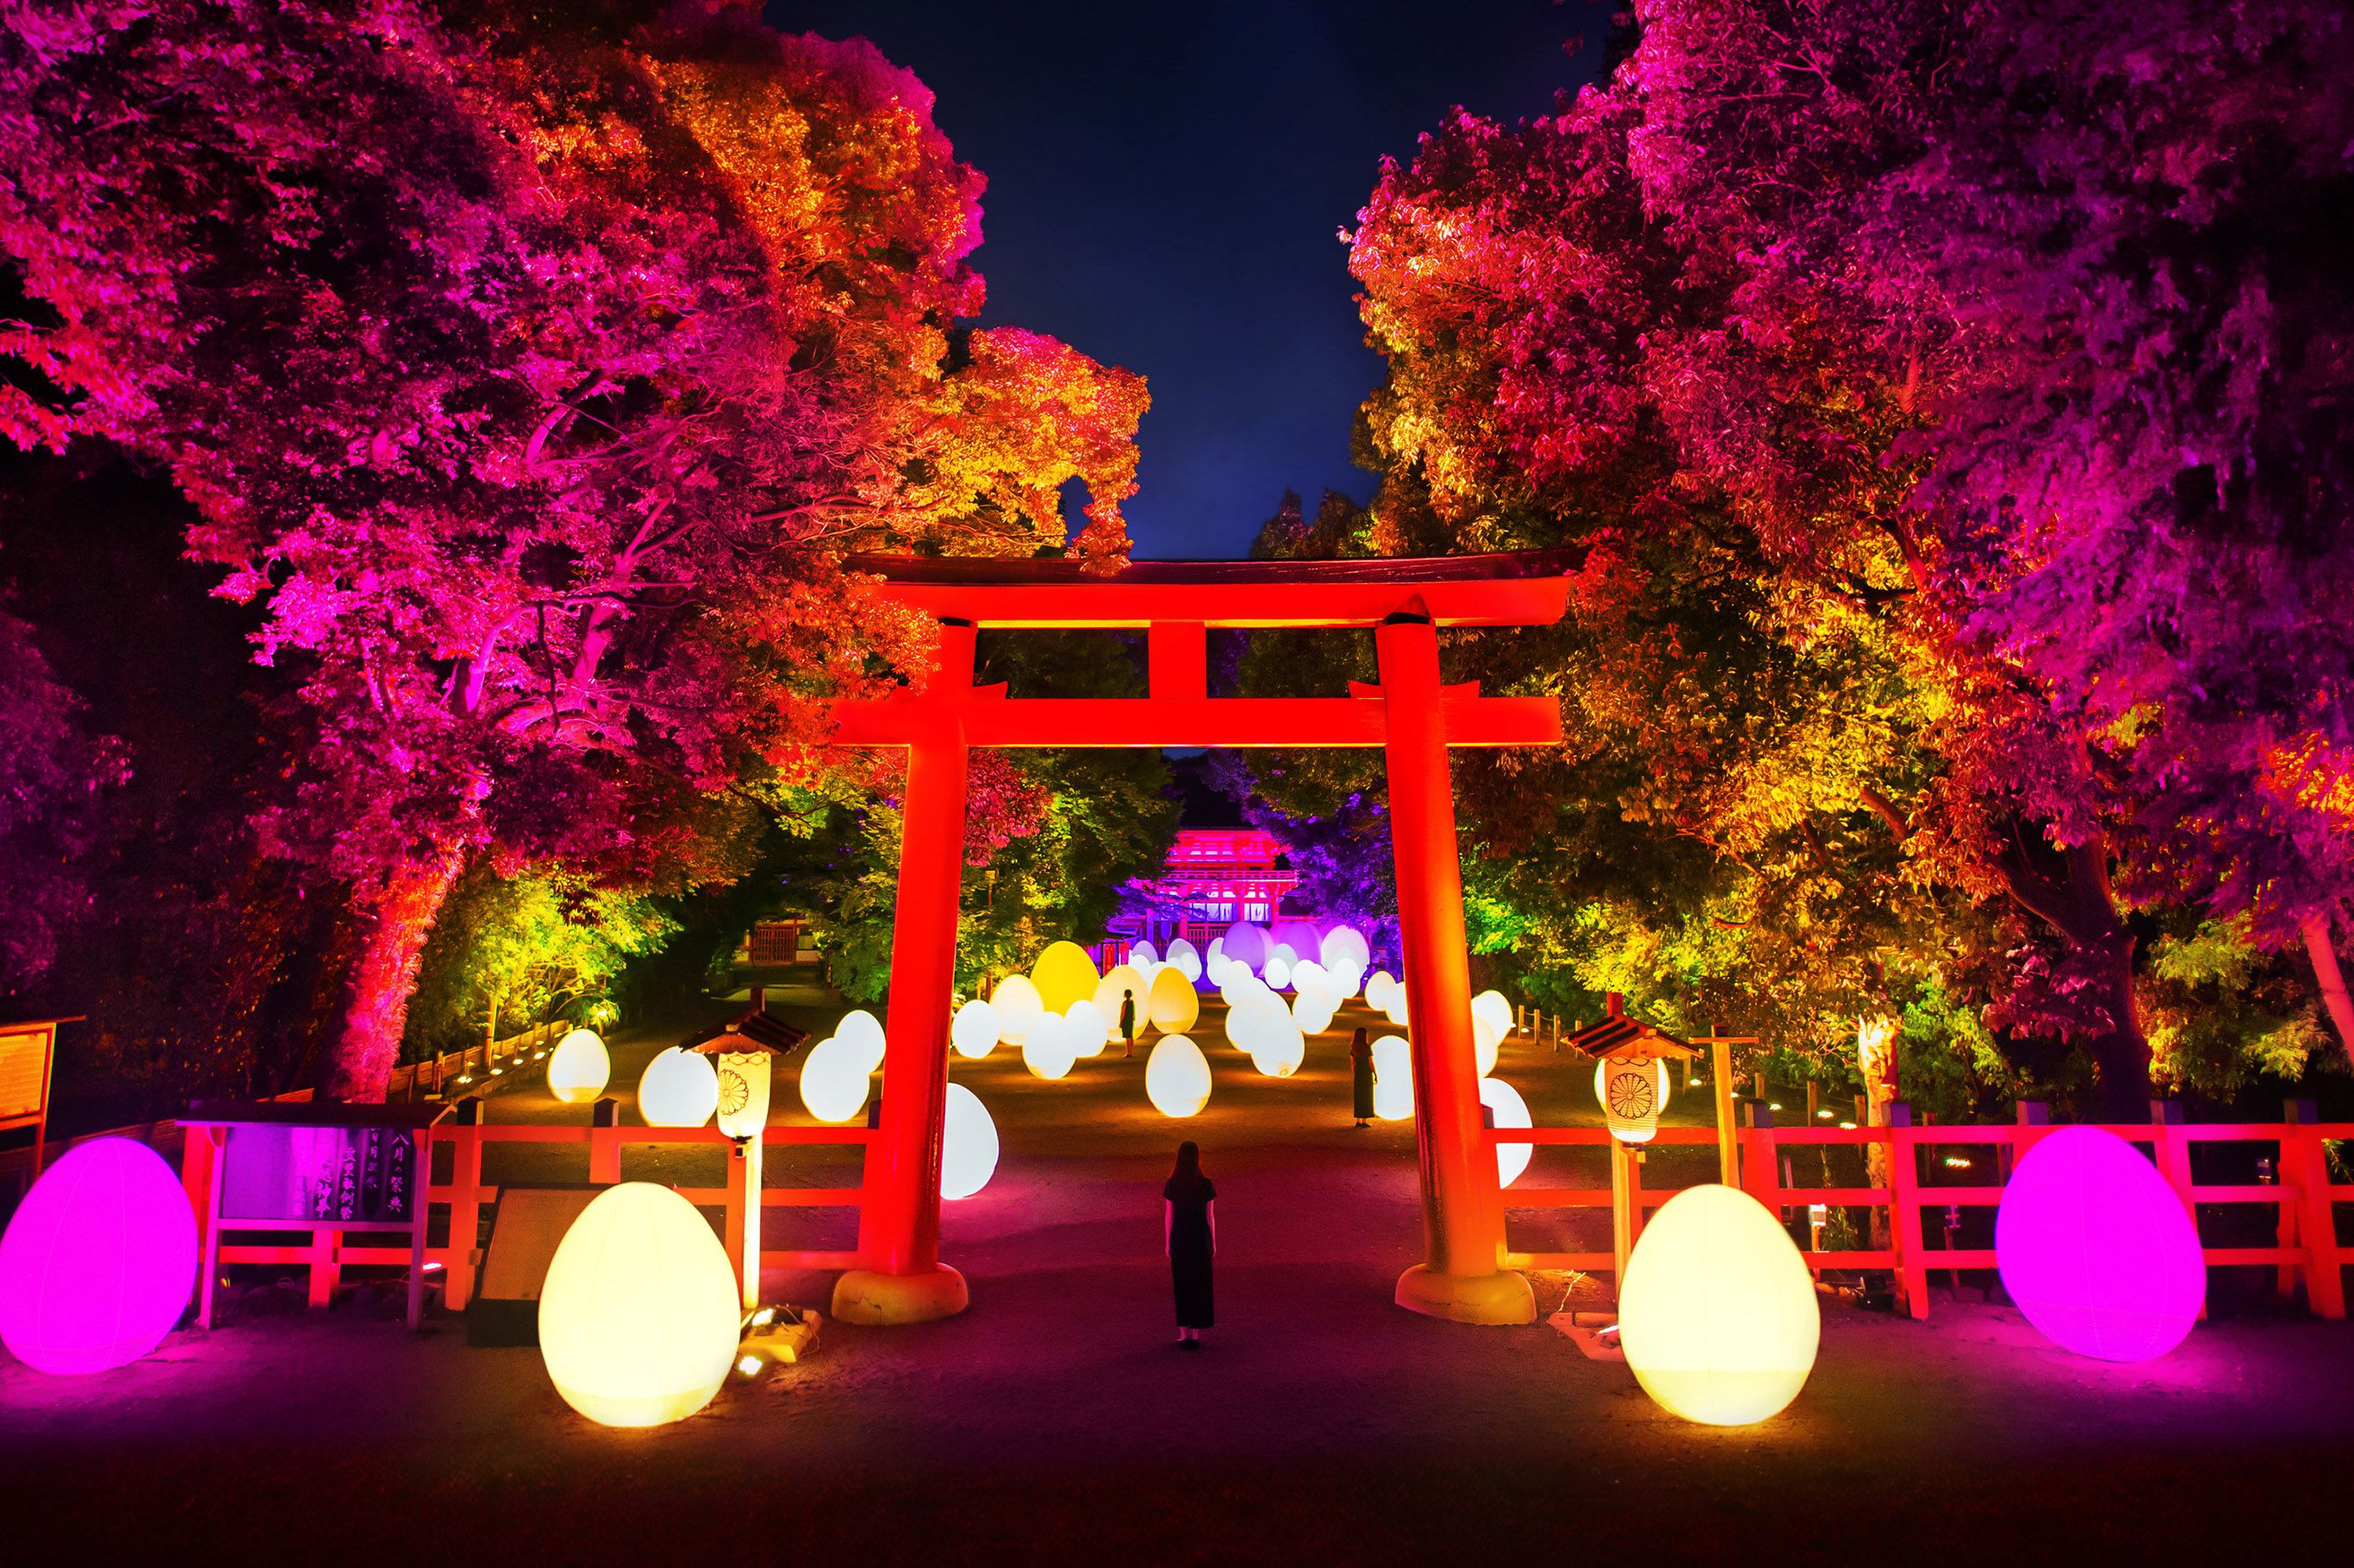 下鴨神社では、糺の森の参道、楼門内を舞台に光のインスタレーション作品を展示。